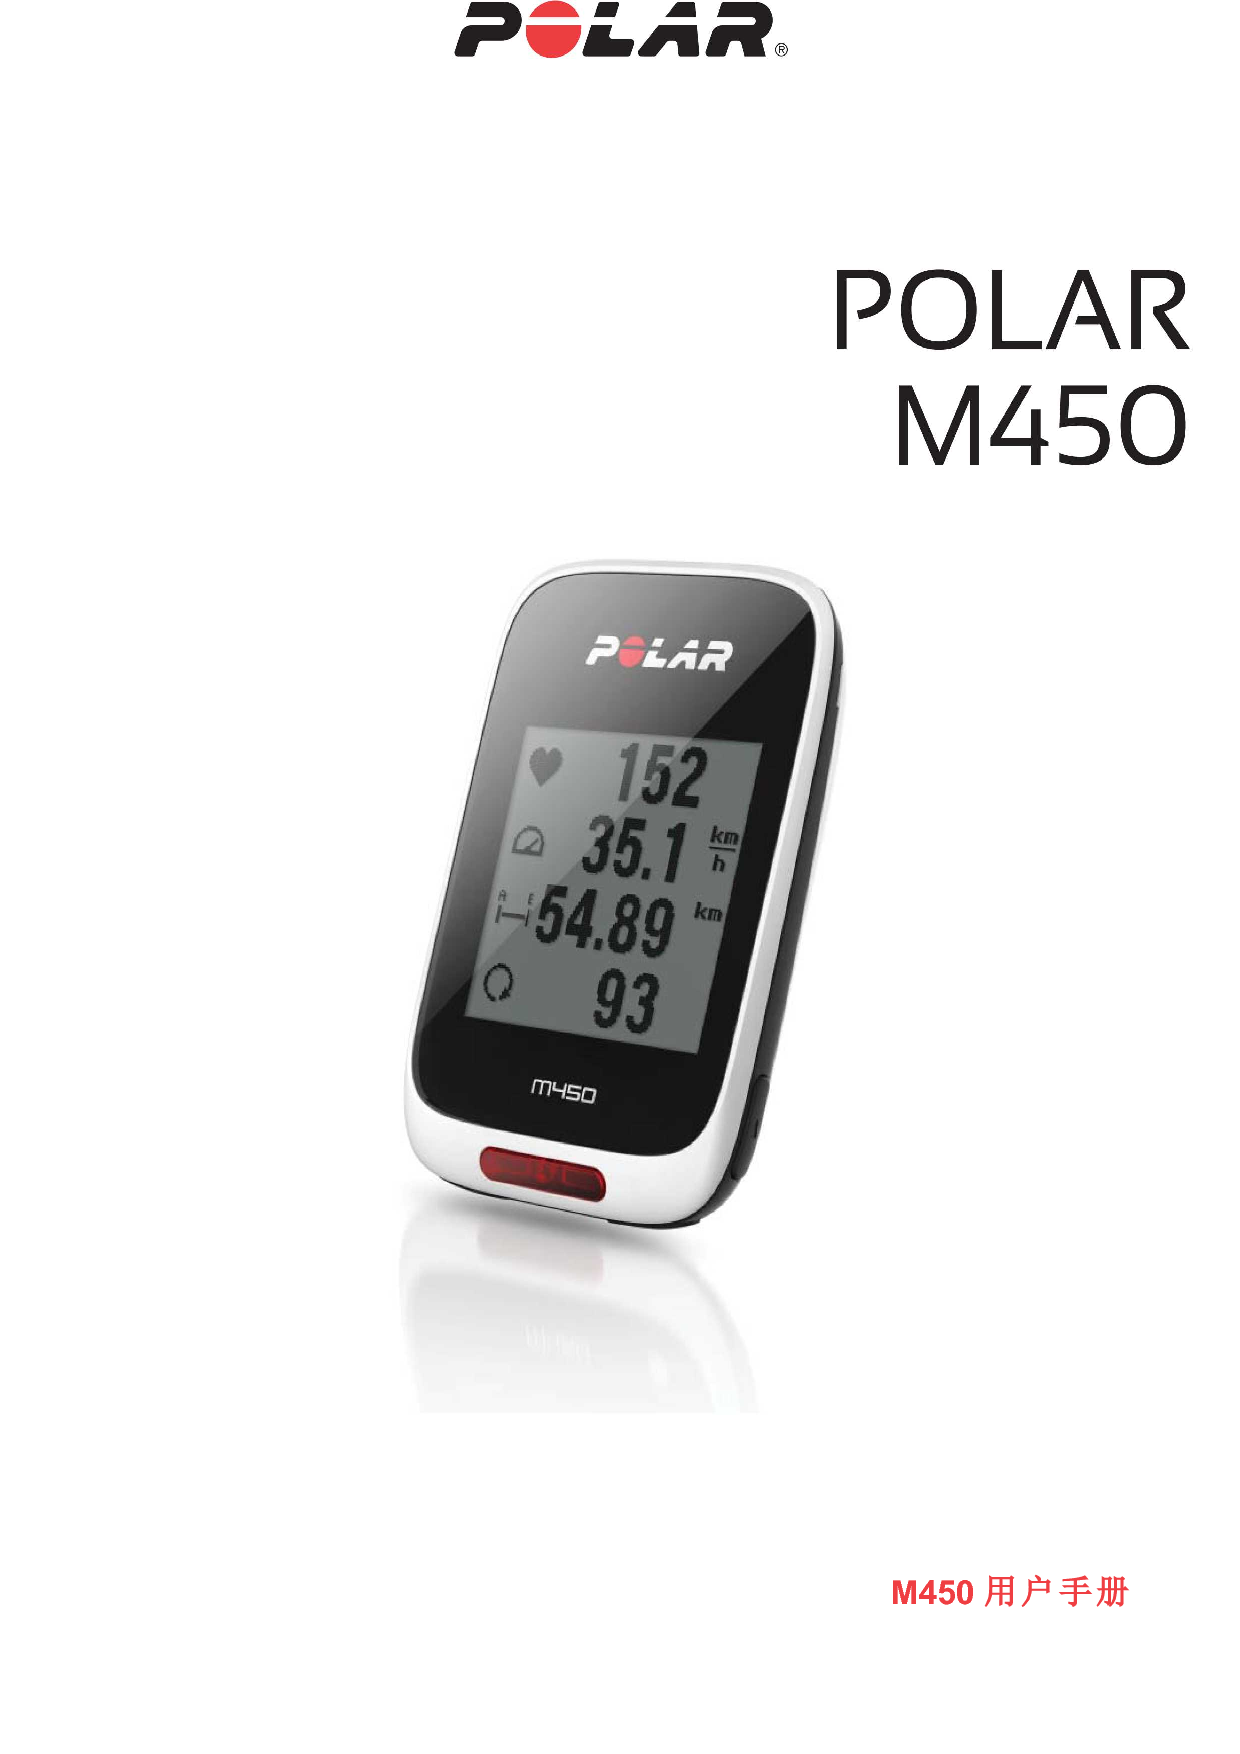 Polar M450 用户手册 封面